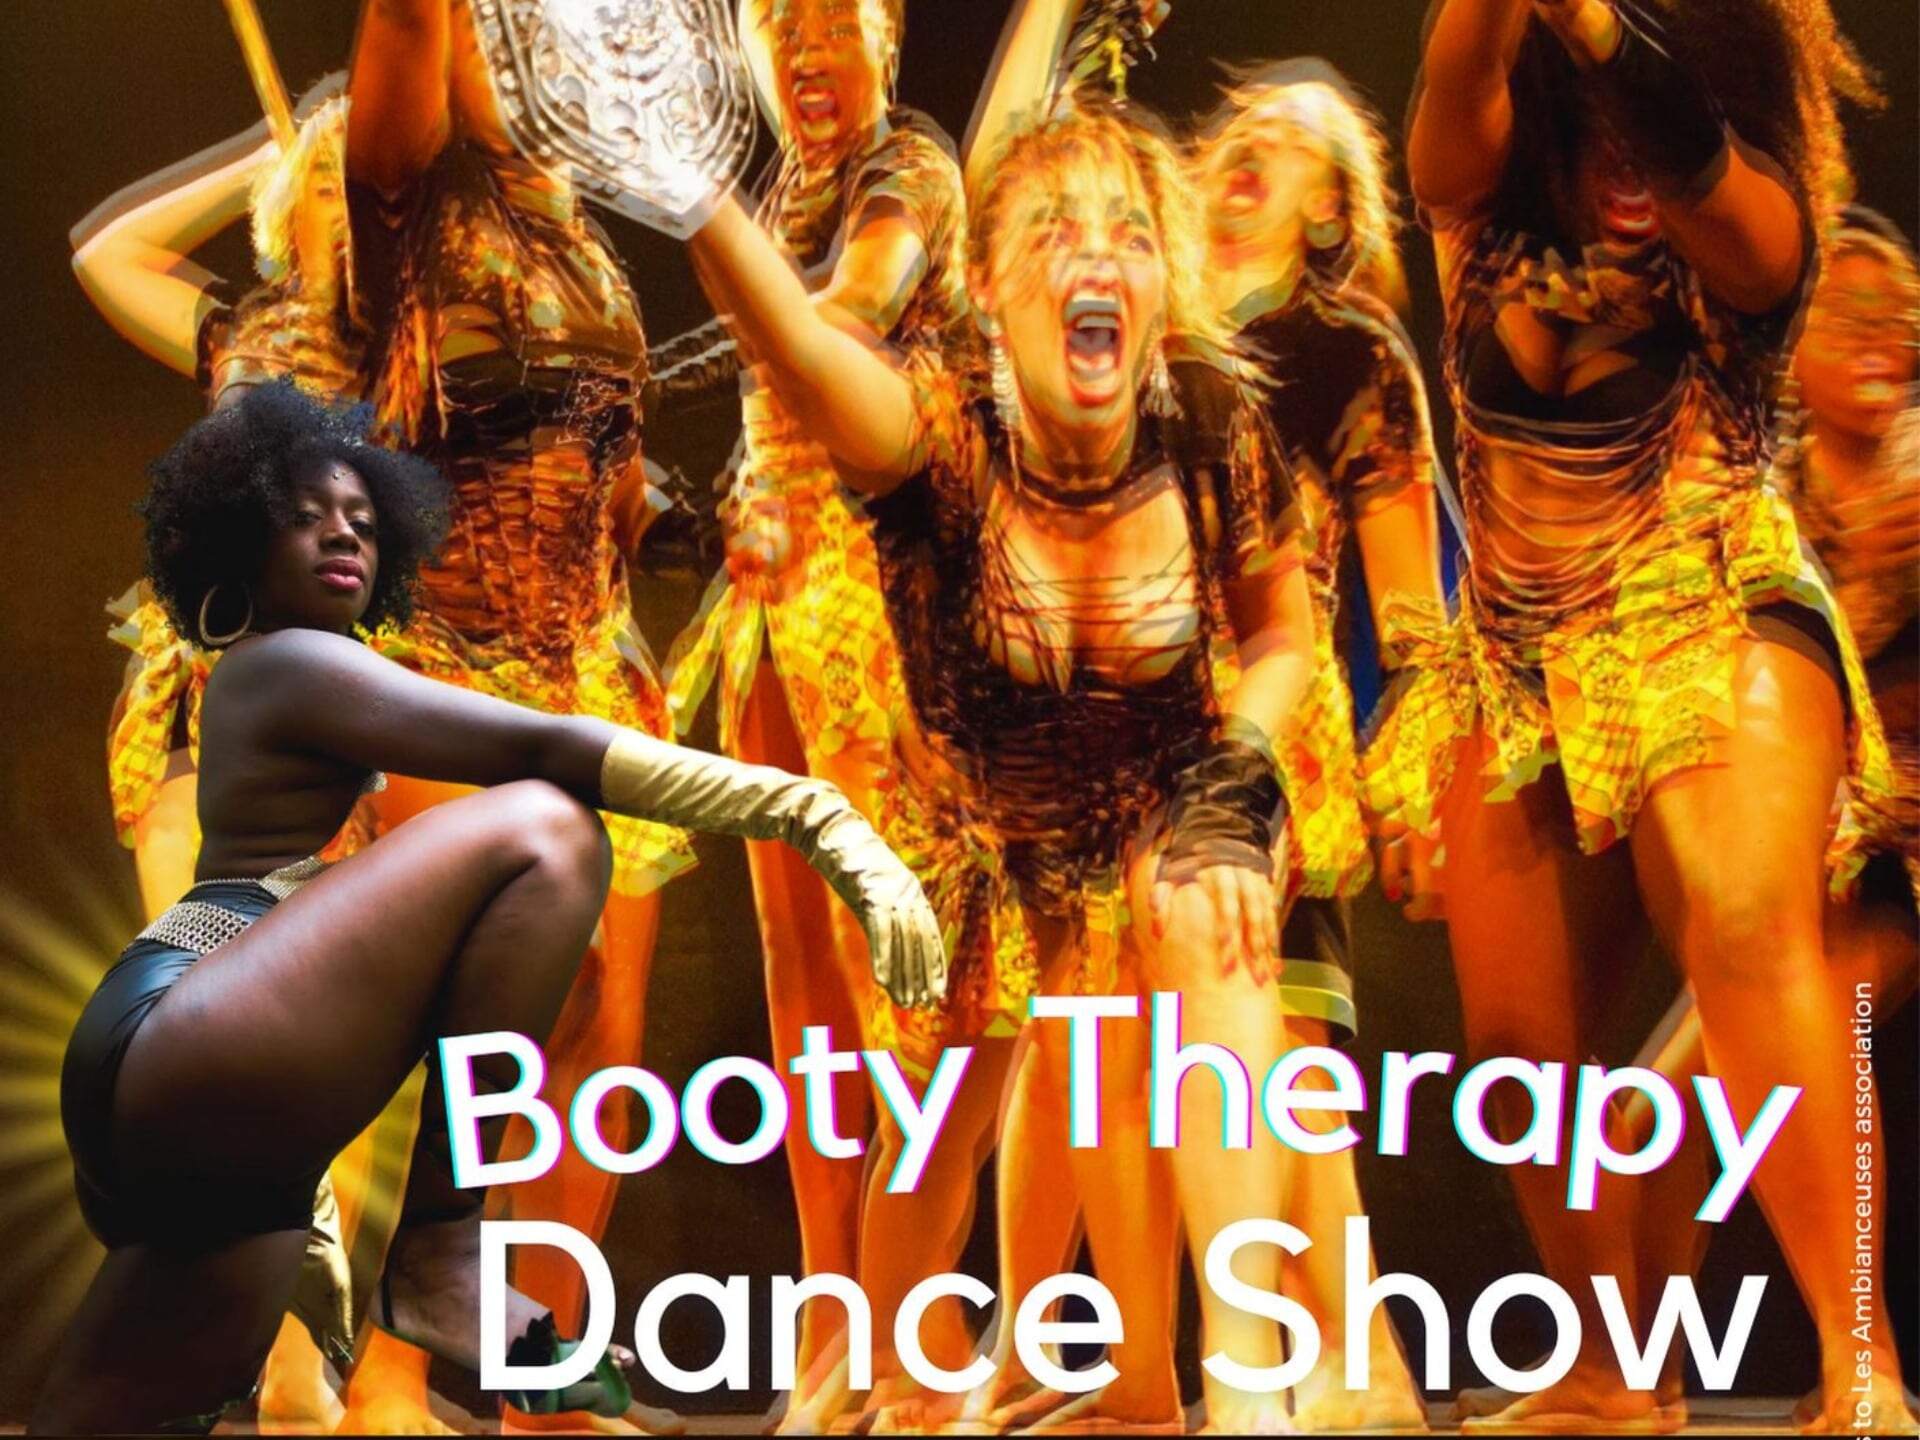 Espectáculo de baile de terapia de botín con bootykilleuses e invitados